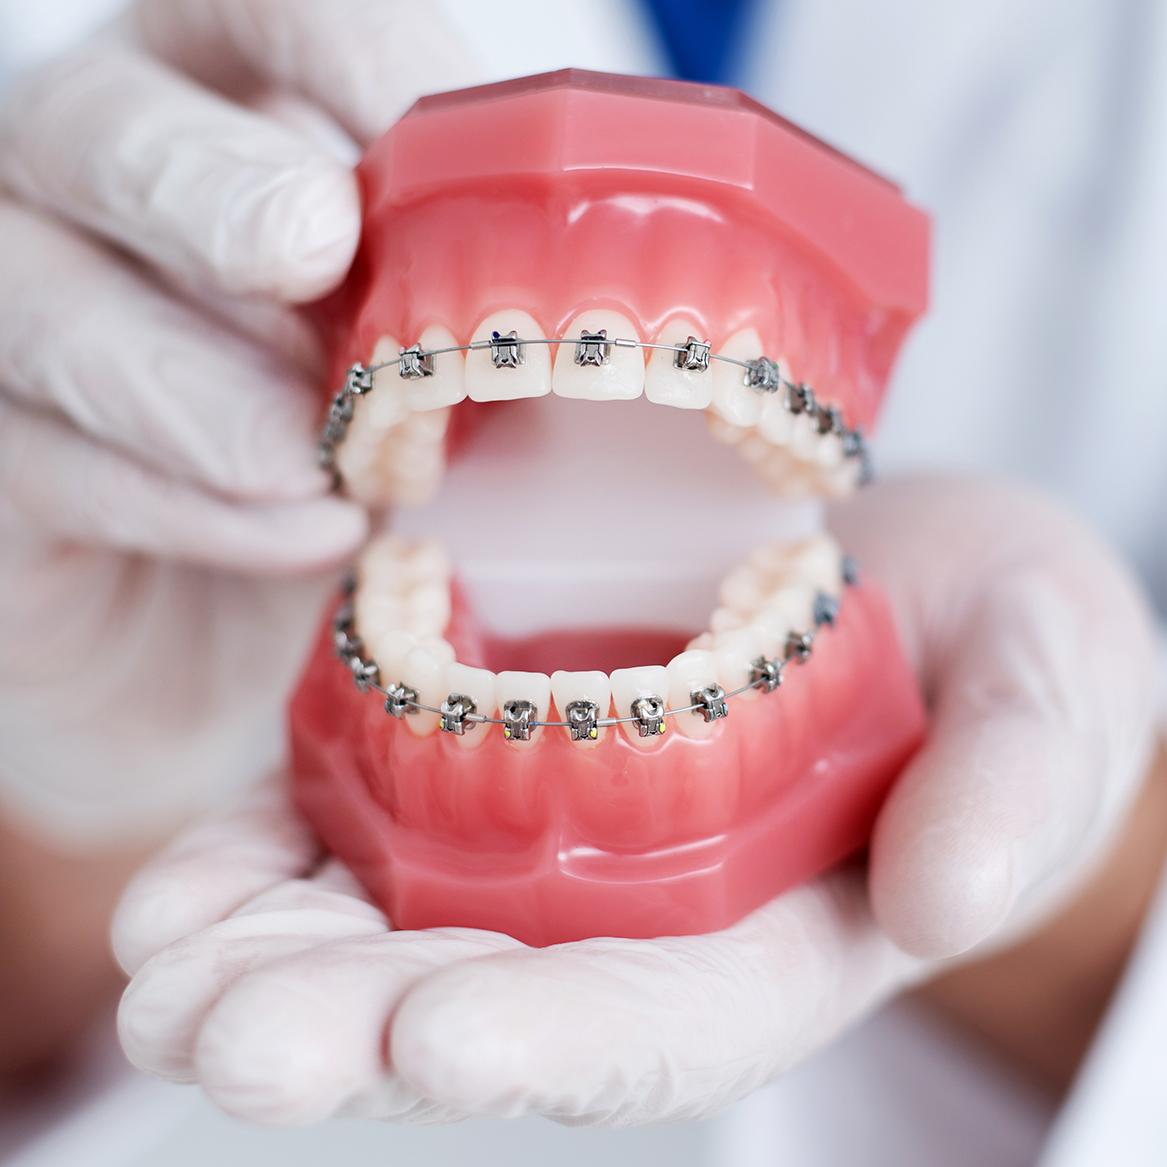 Thời gian niềng răng trung bình từ 12 – 24 tháng